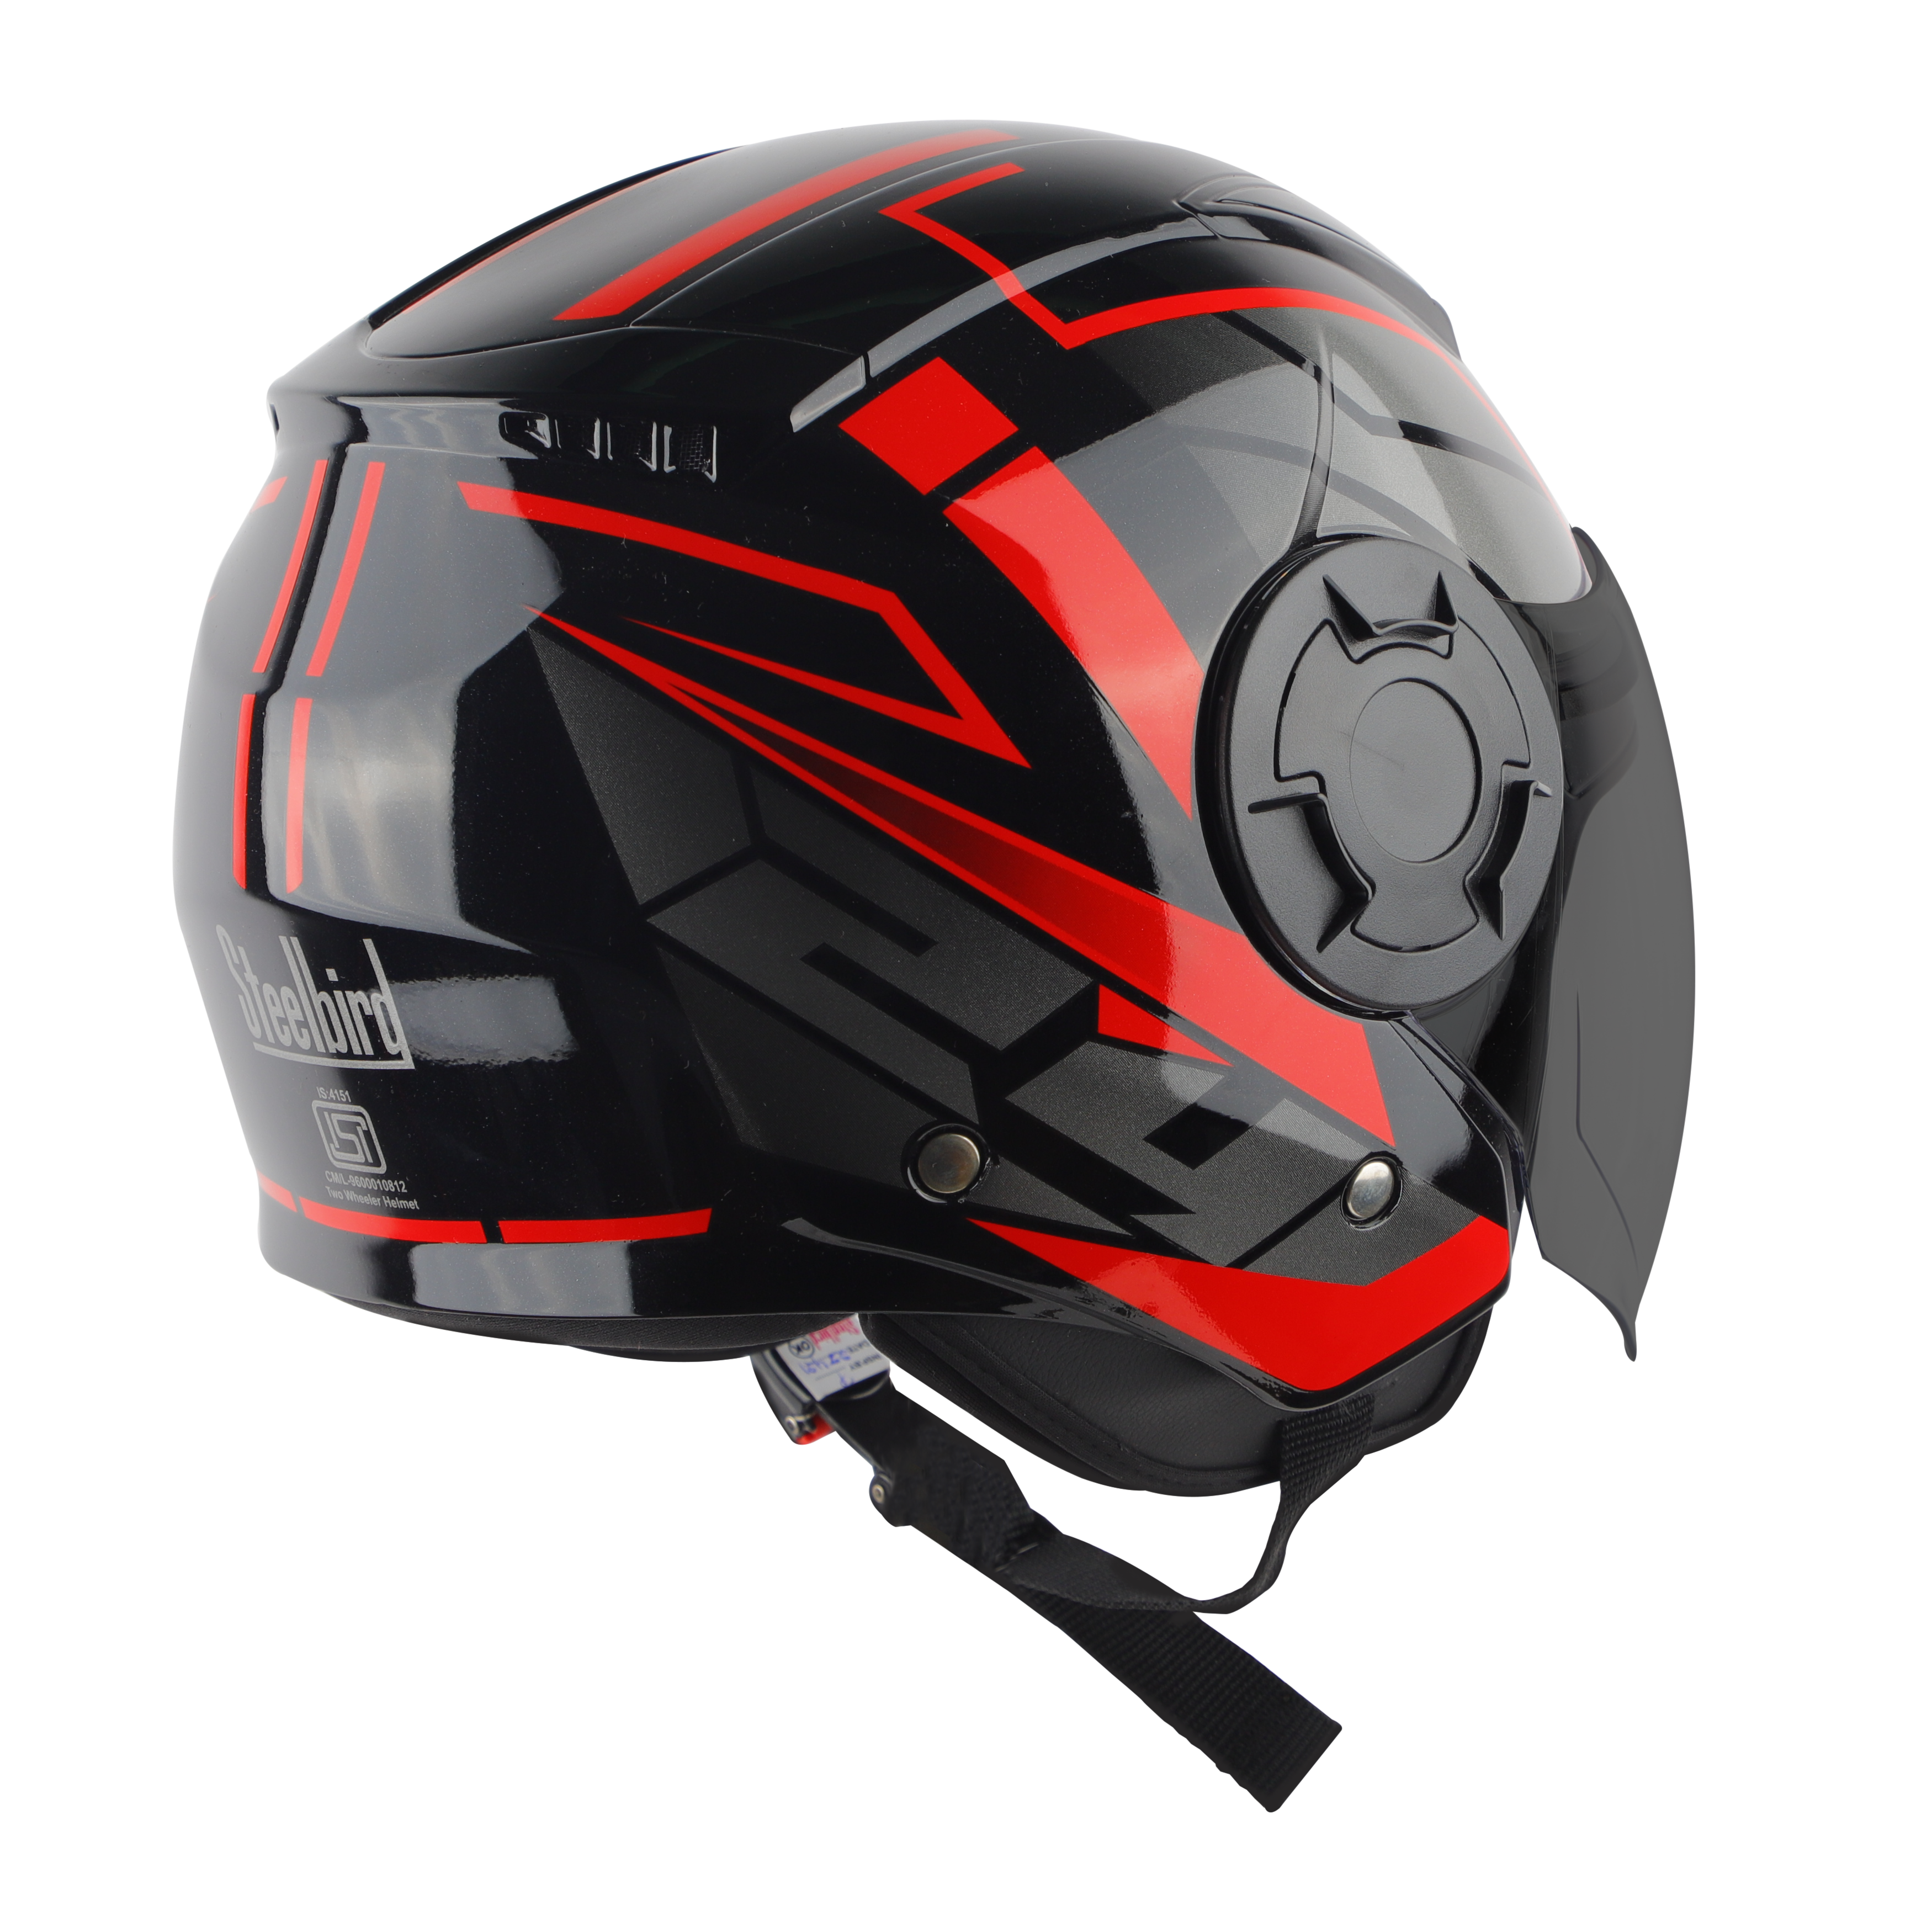 Steelbird SBH-31 Baron ISI Certified Open Face Helmet For Men And Women (Matt Black Red With Smoke Visor)